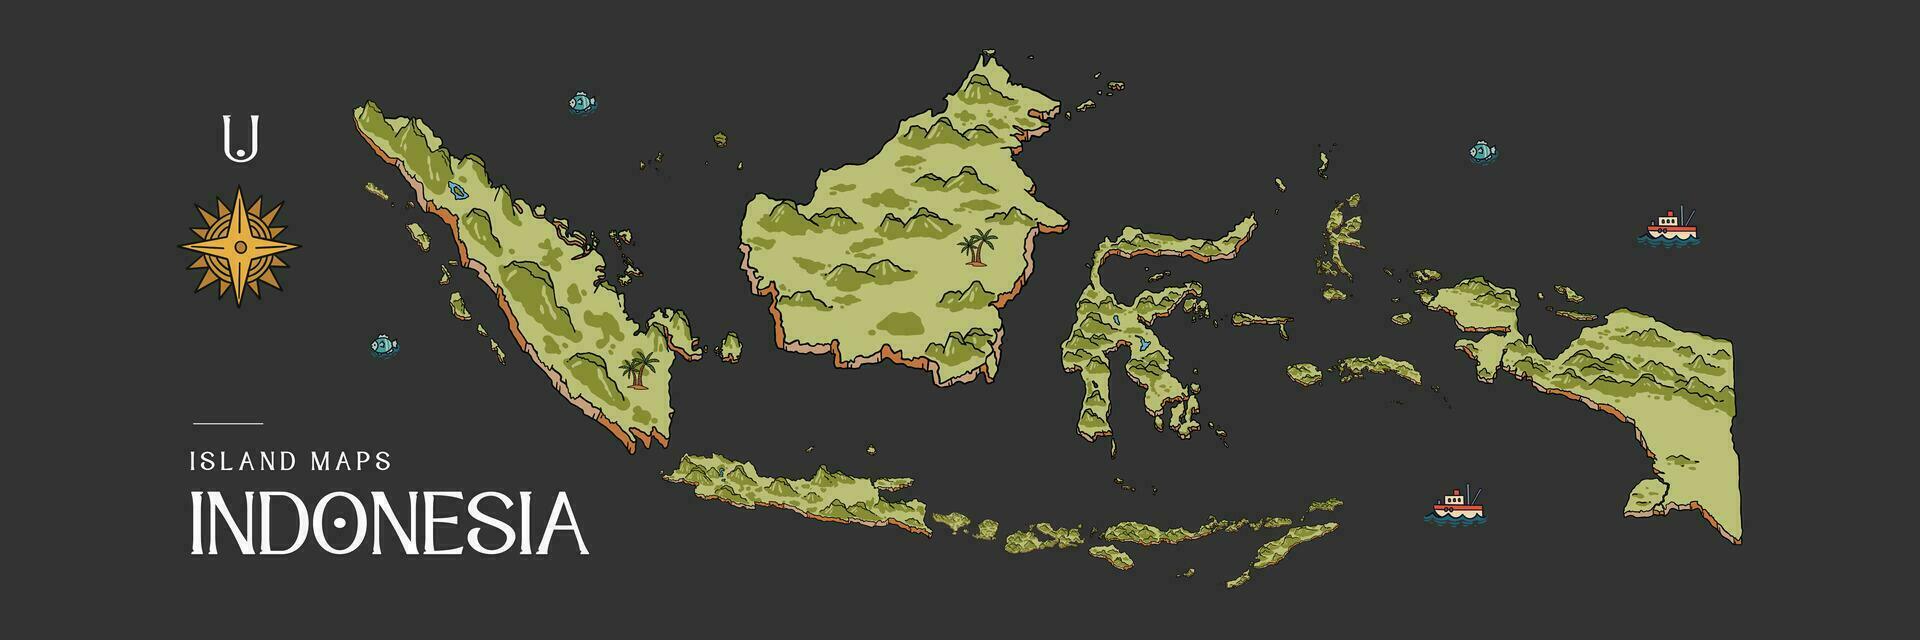 isolé Indonésie îles carte dessiné à la main illustration vecteur